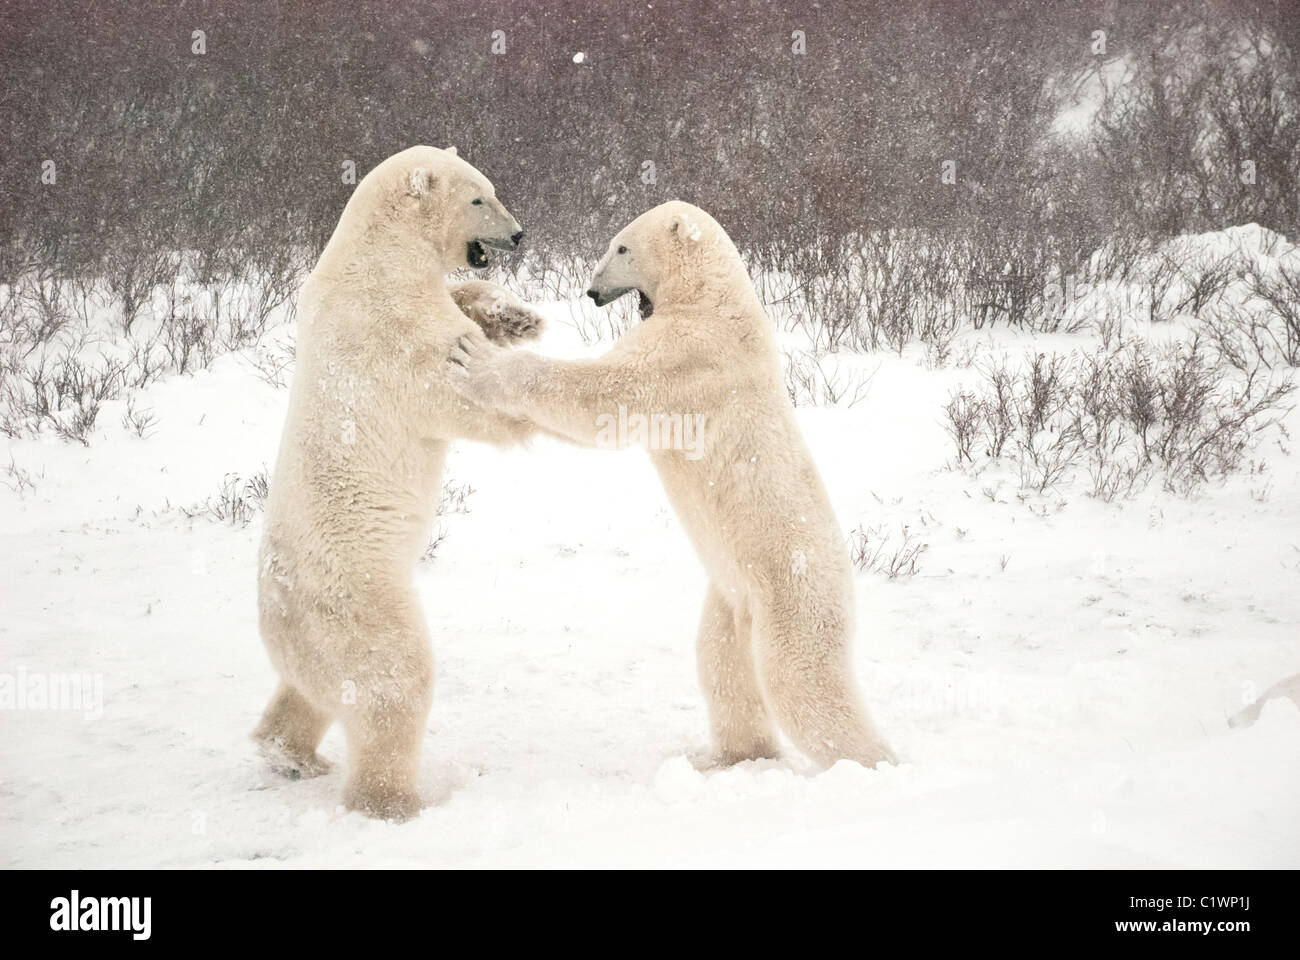 Los osos polares, Ursus maritimus, jugar combates, Churchill, Manitoba, Canadá Foto de stock